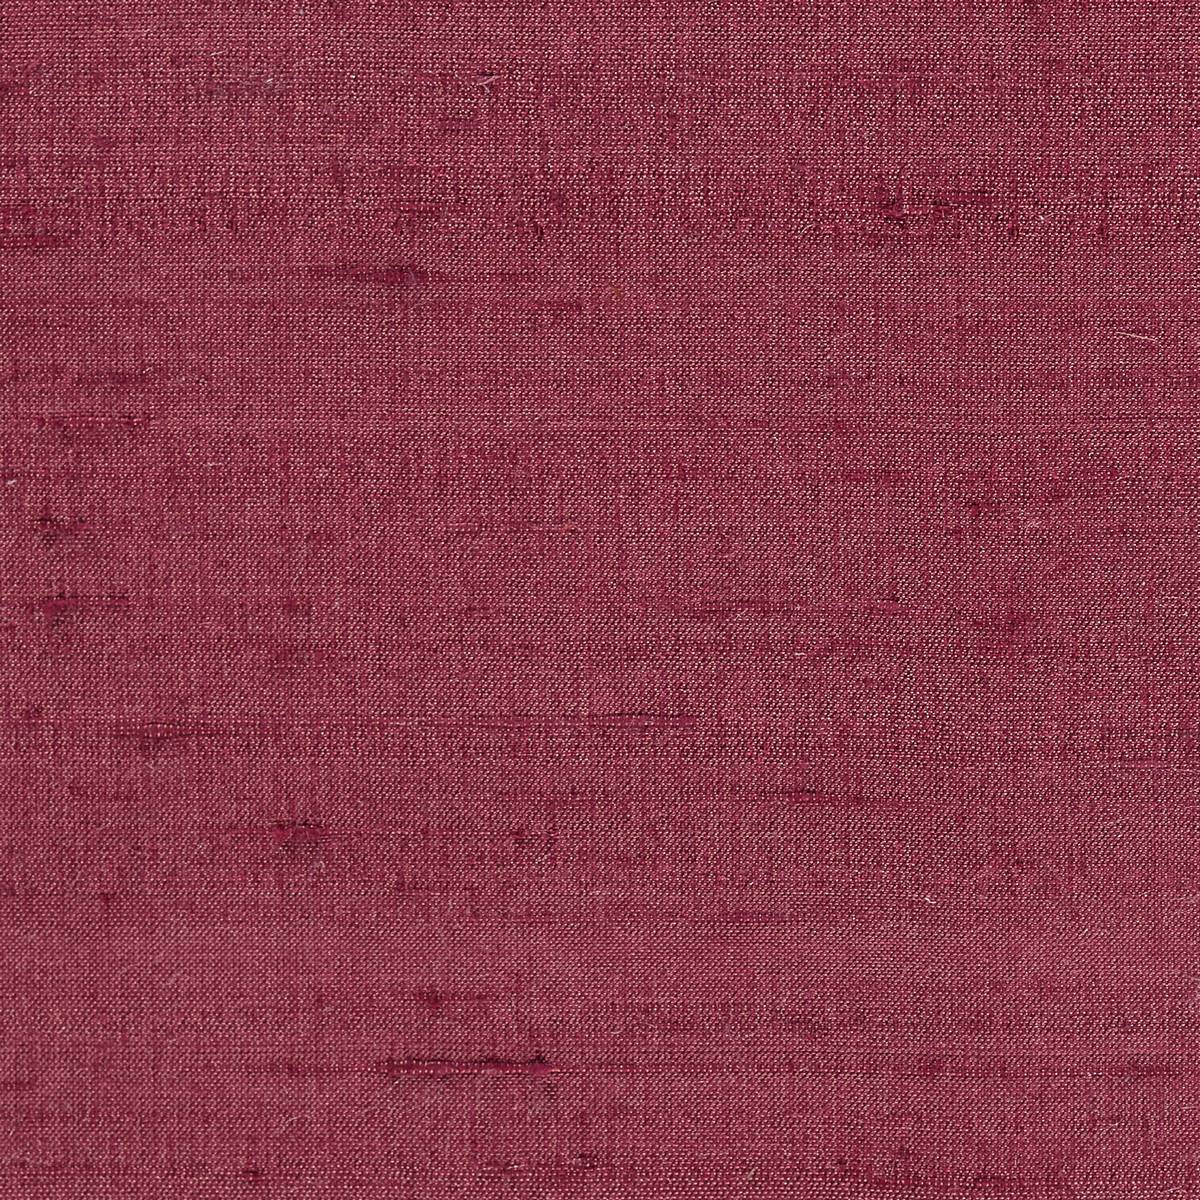 Laminar Granita Fabric by Harlequin